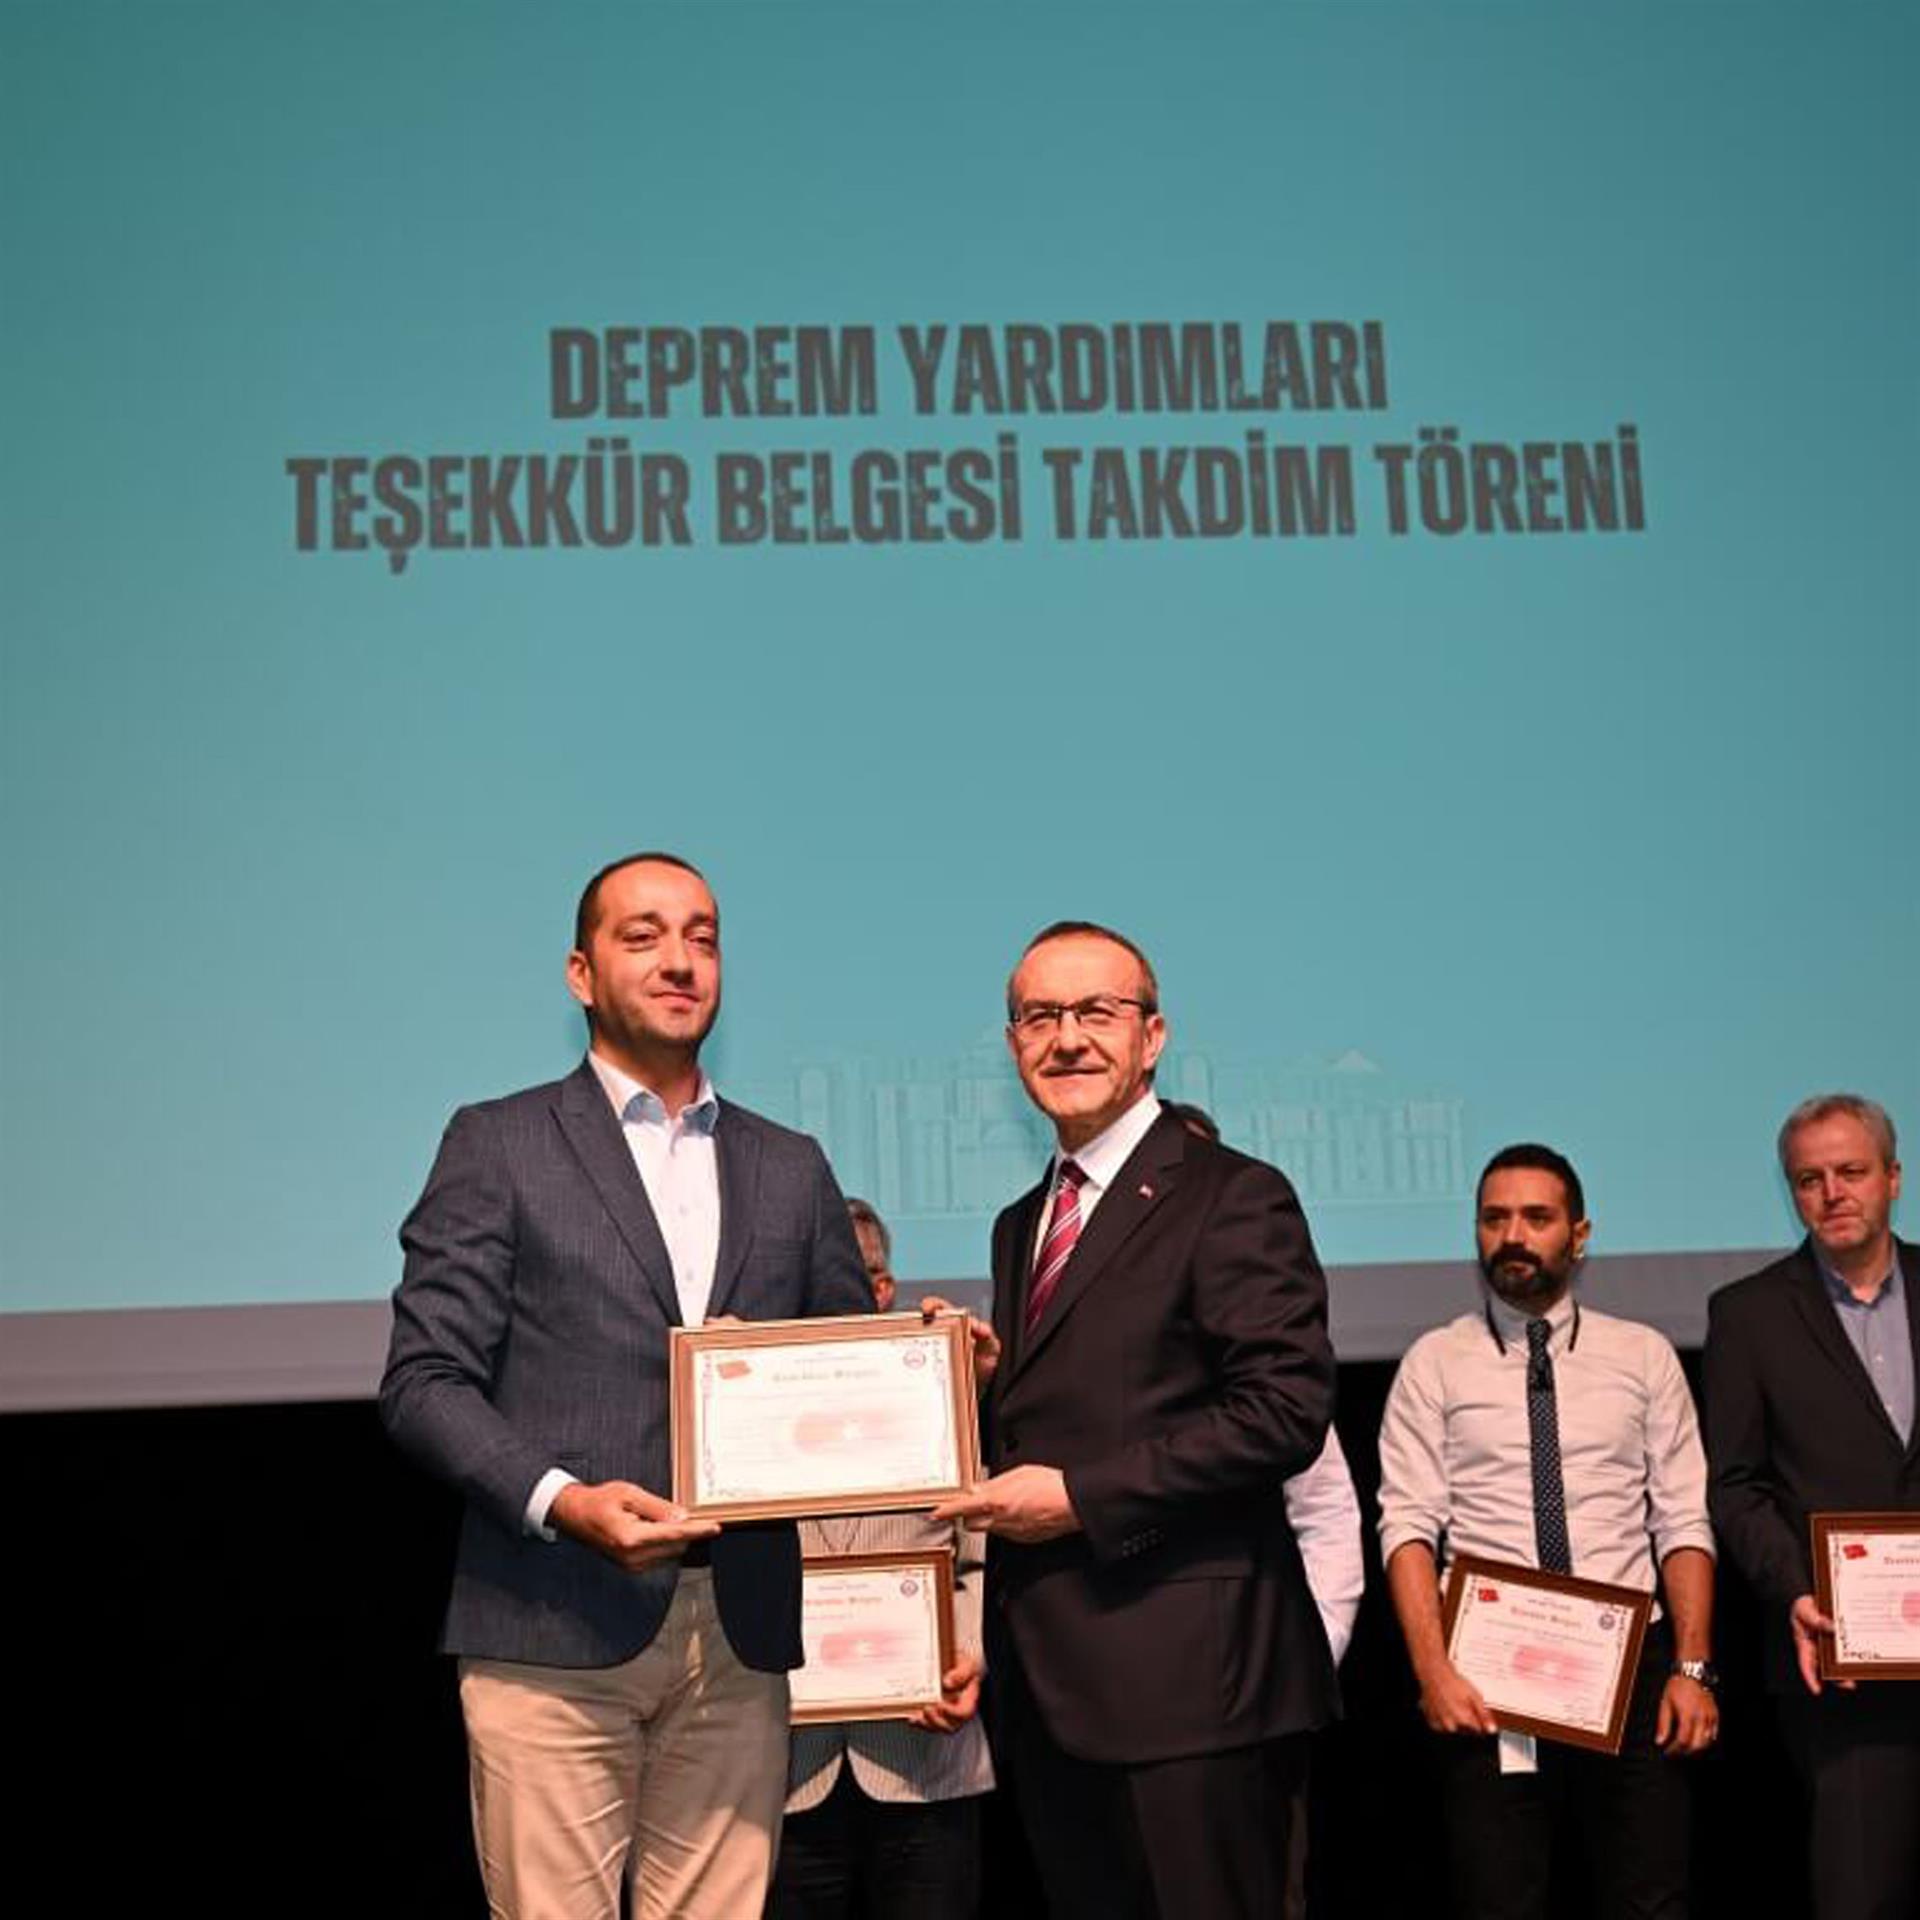 Certificate of Appreciation to Dalgakıran